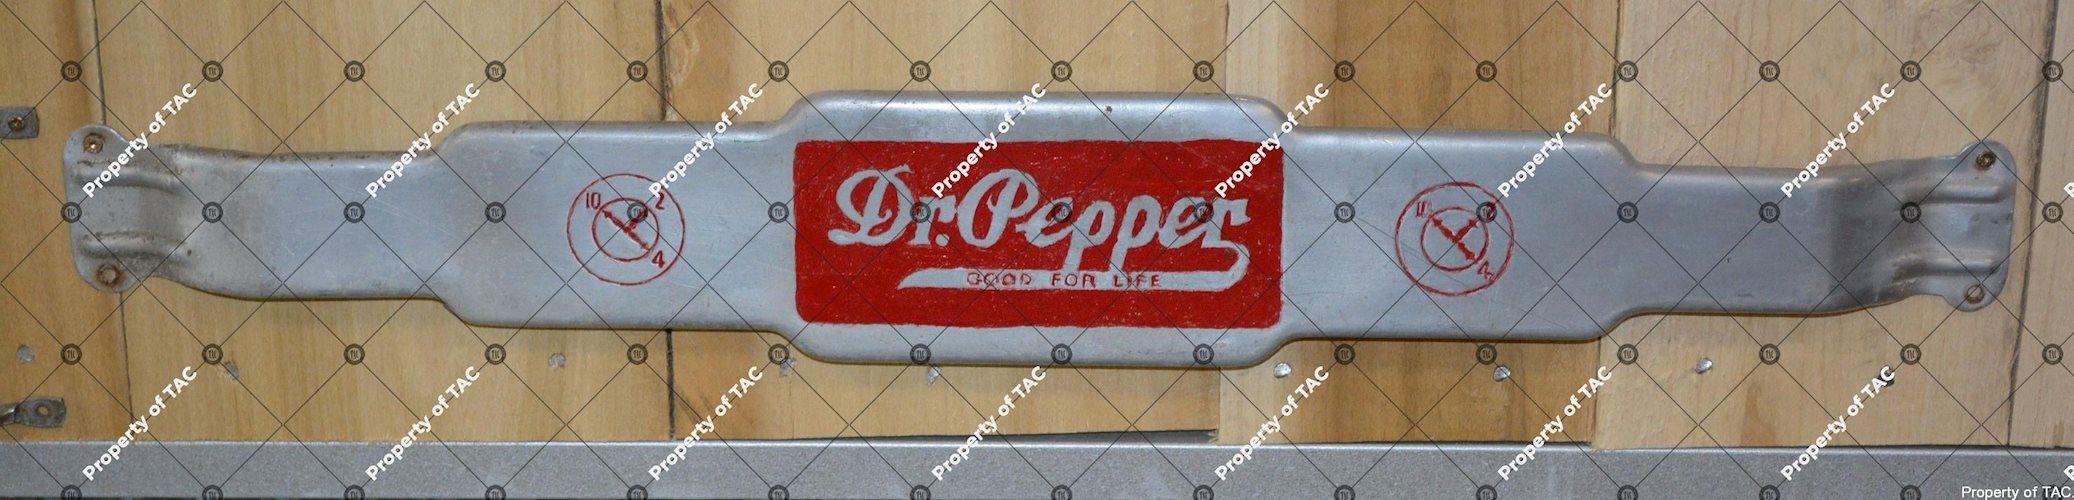 Dr. Pepper 10-2-4 door push